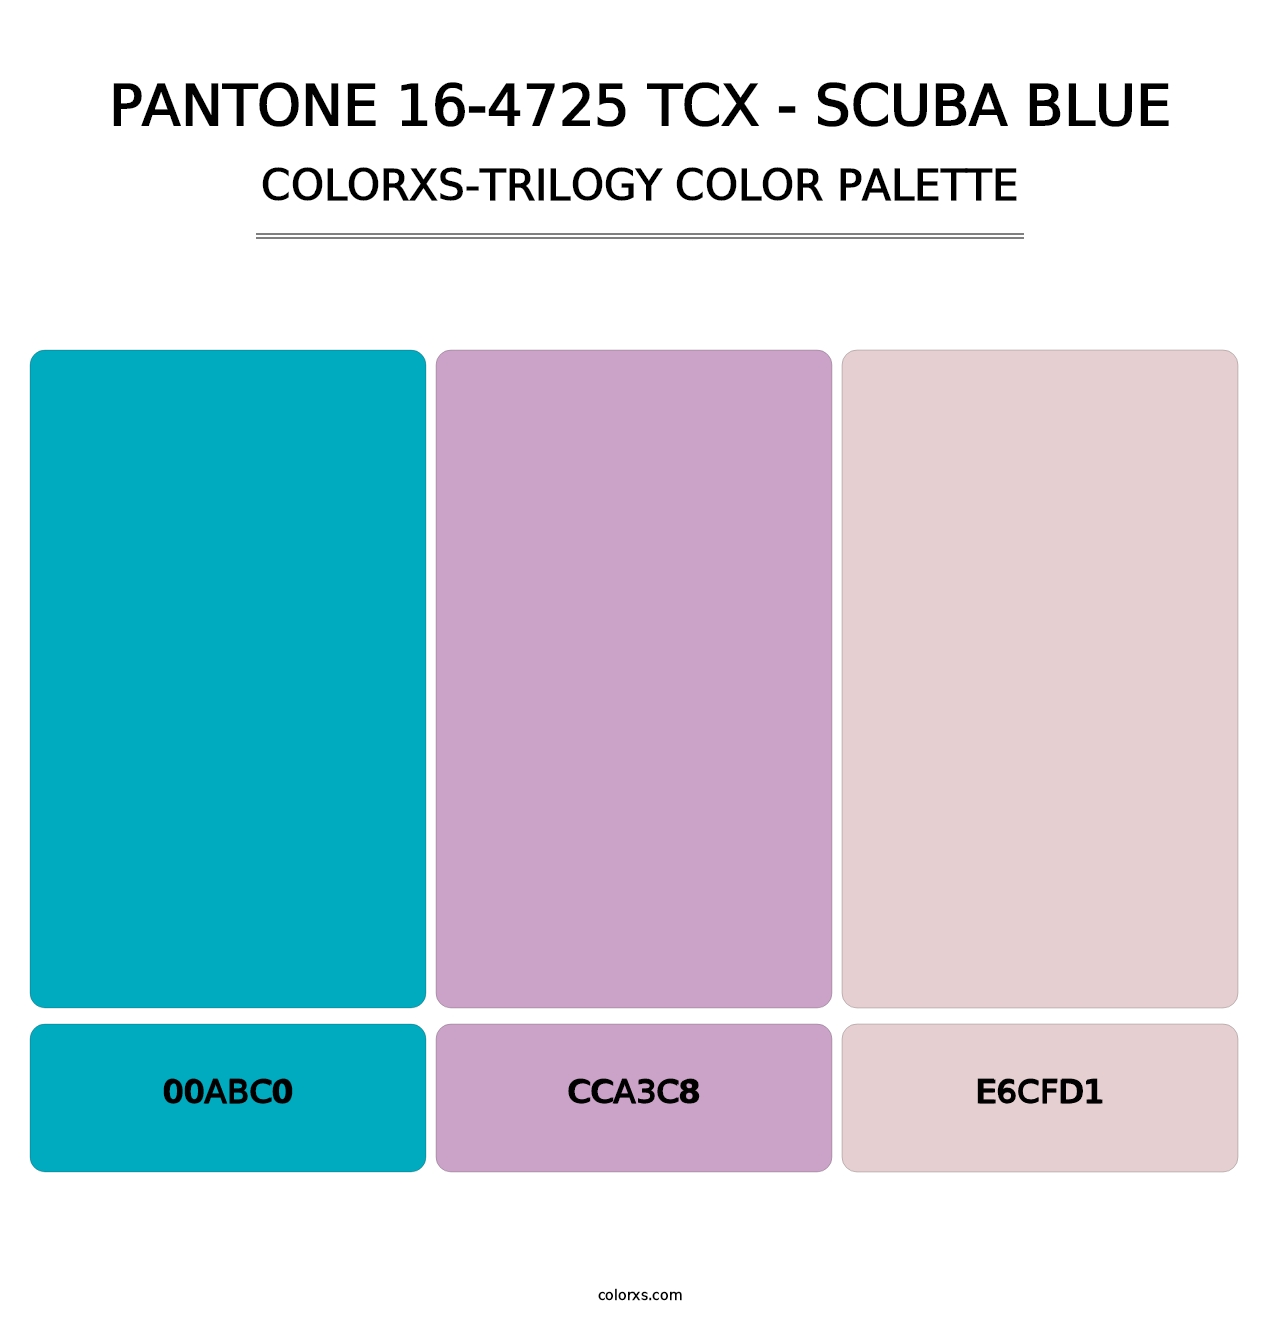 PANTONE 16-4725 TCX - Scuba Blue - Colorxs Trilogy Palette